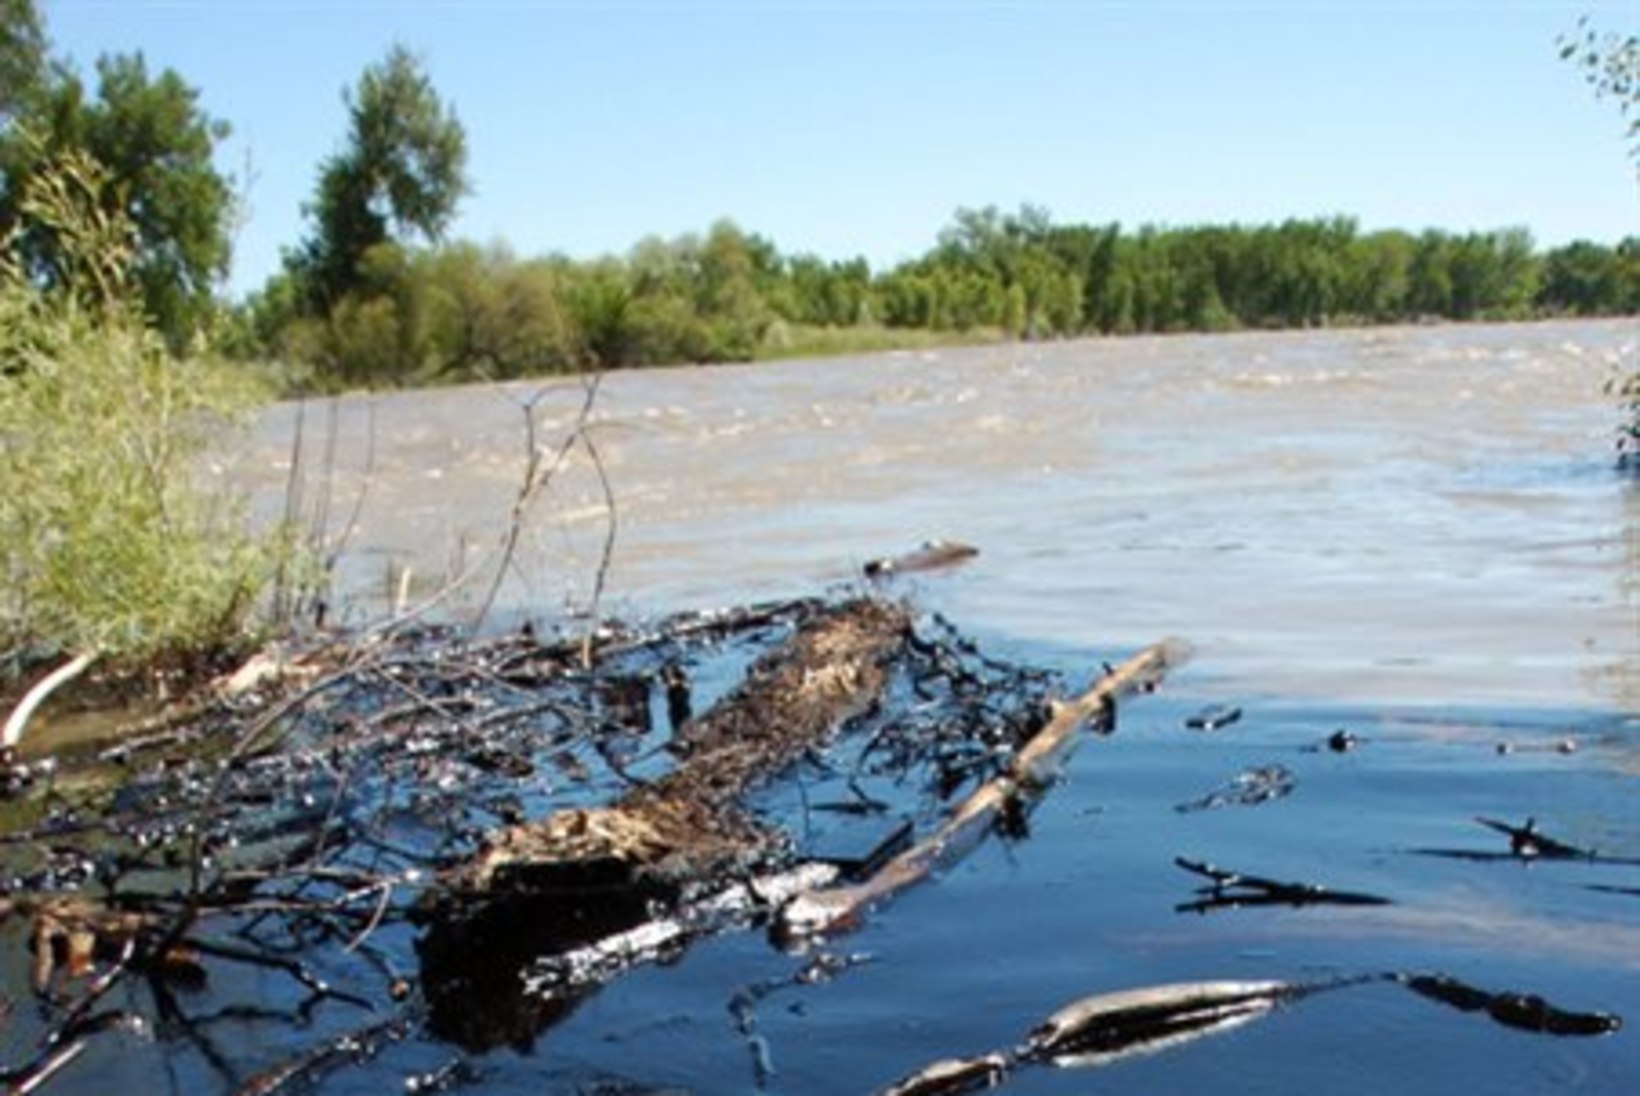 Yellowstone'i jõgi reostus naftatoru lõhkemise tagajärjel